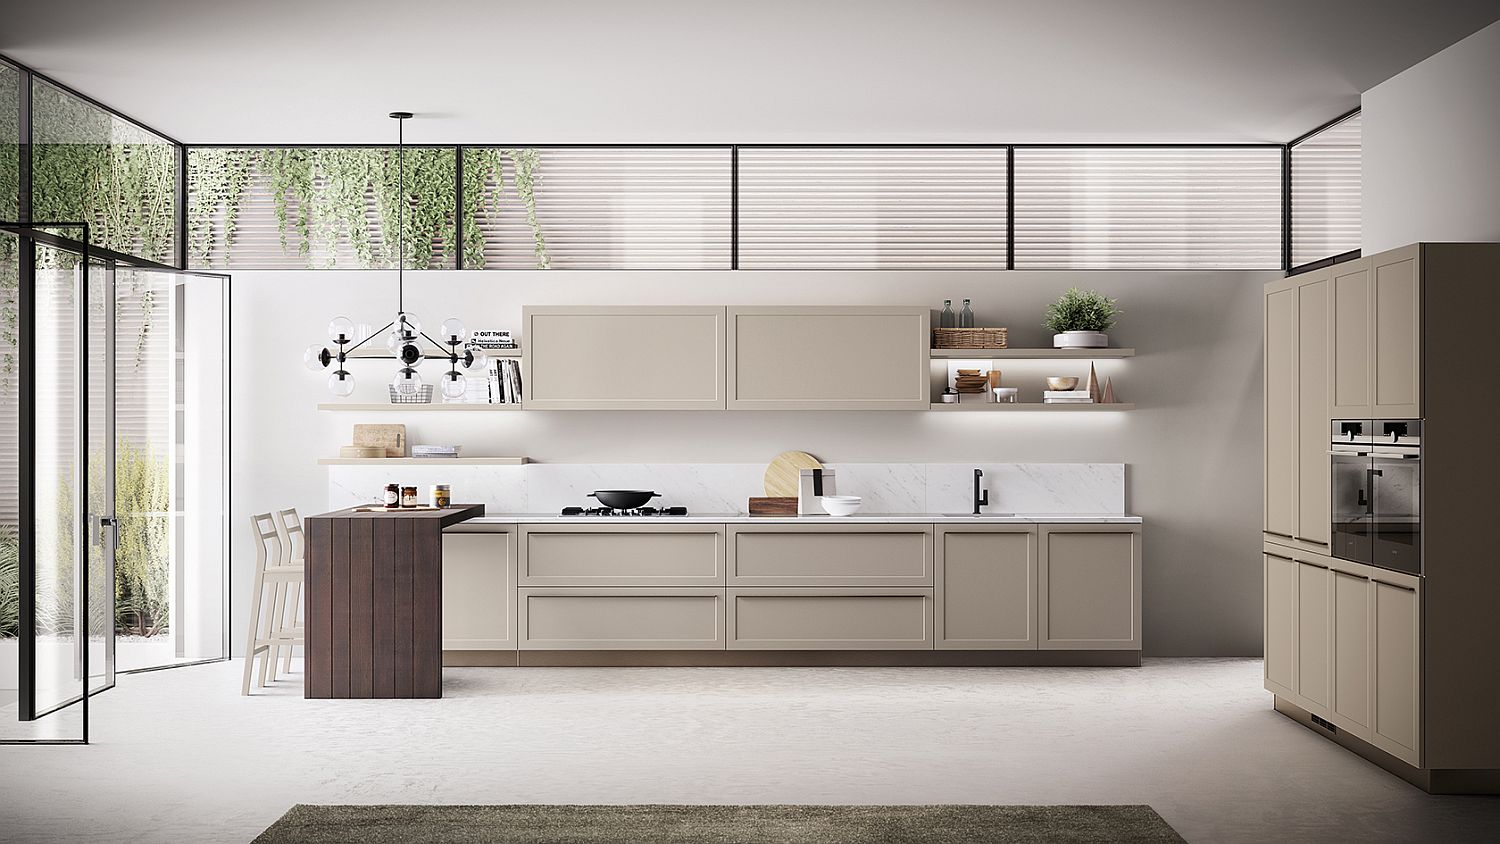 classic contemporary kitchen design